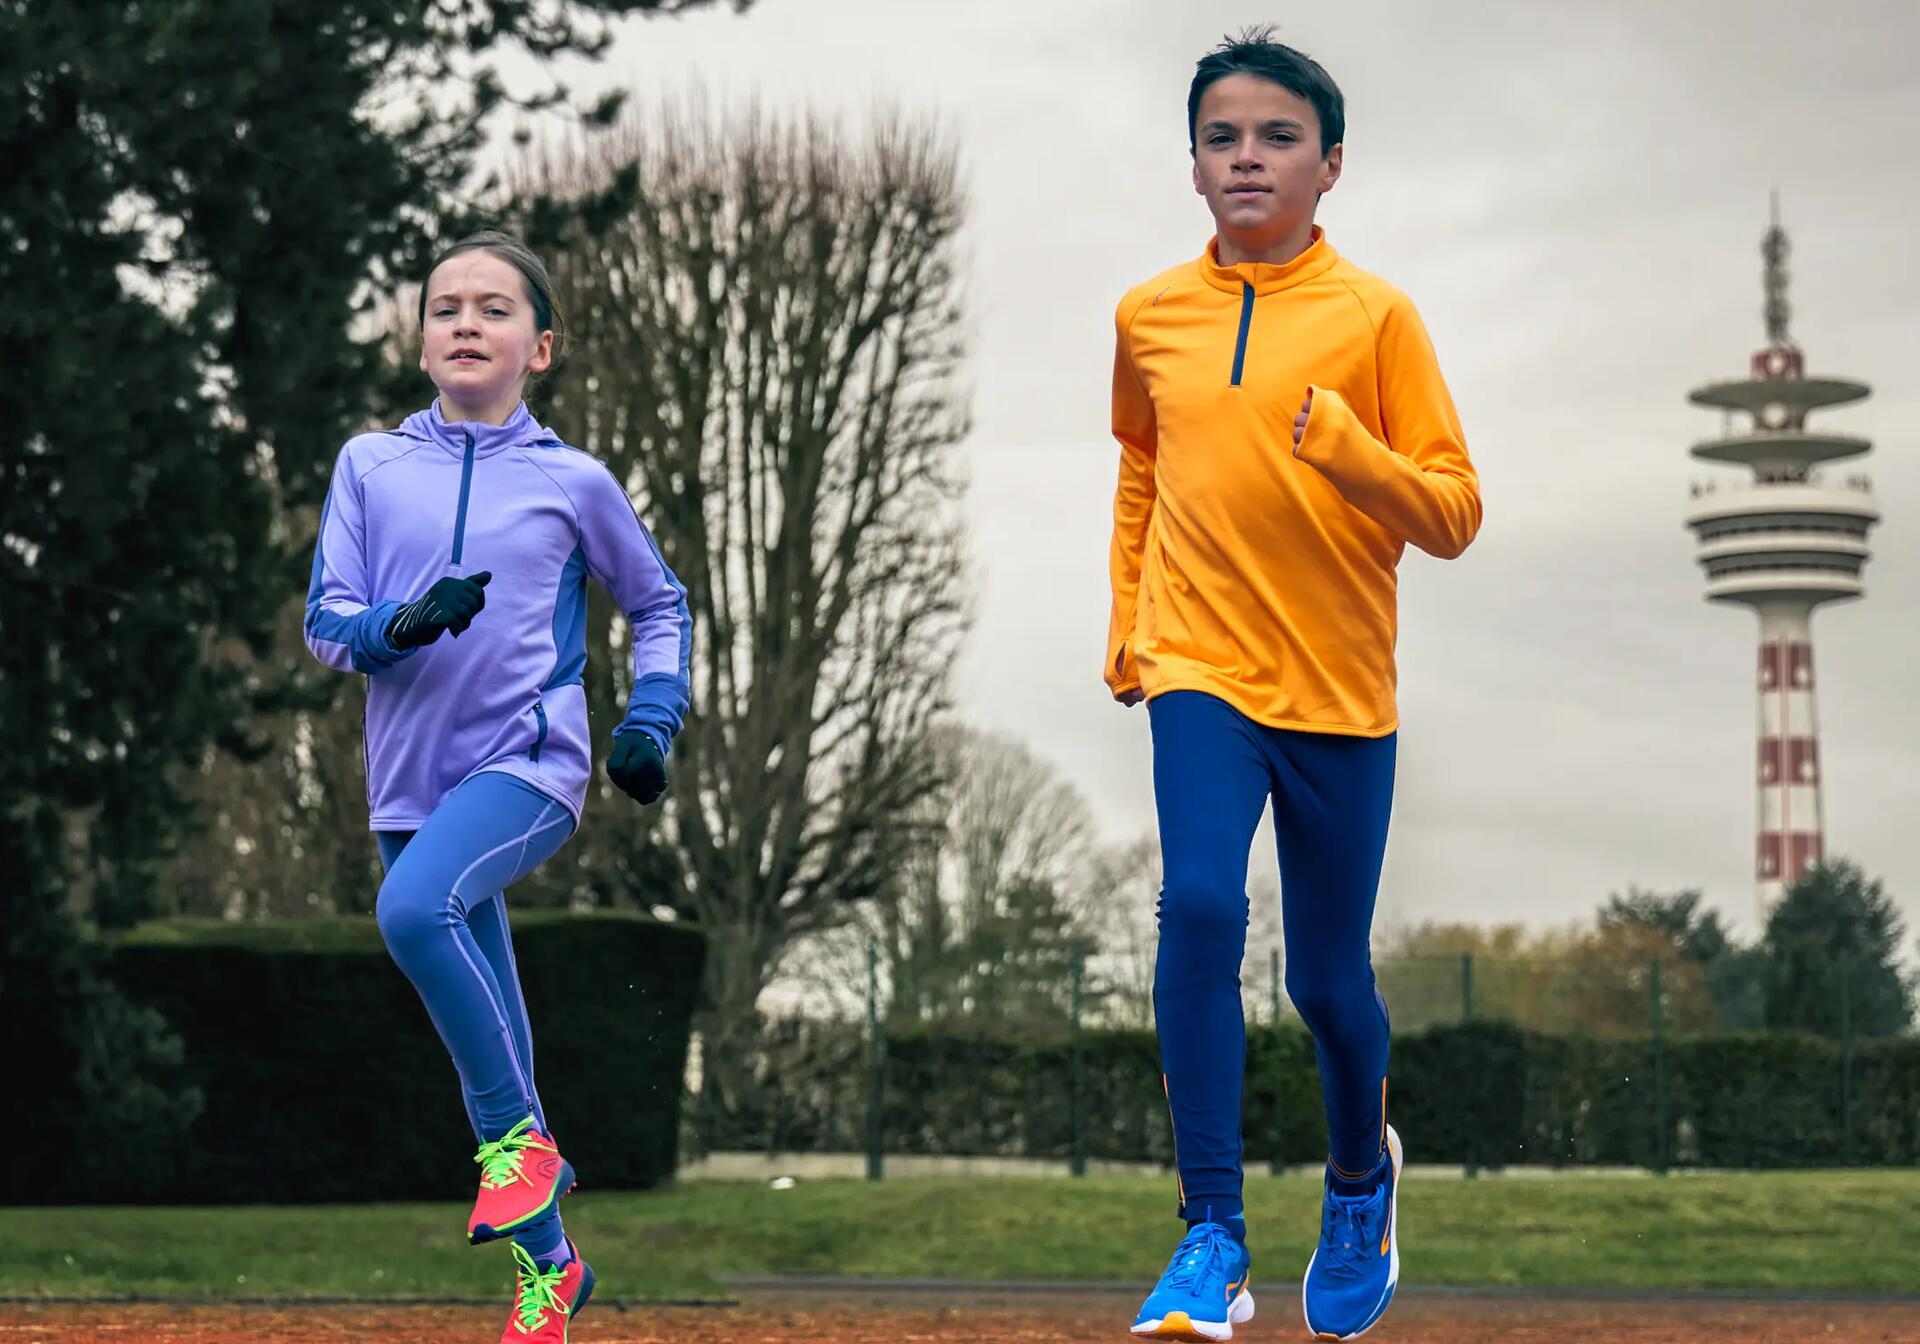 de 8 a 12 ans, le sport peut devenir plus compétitif